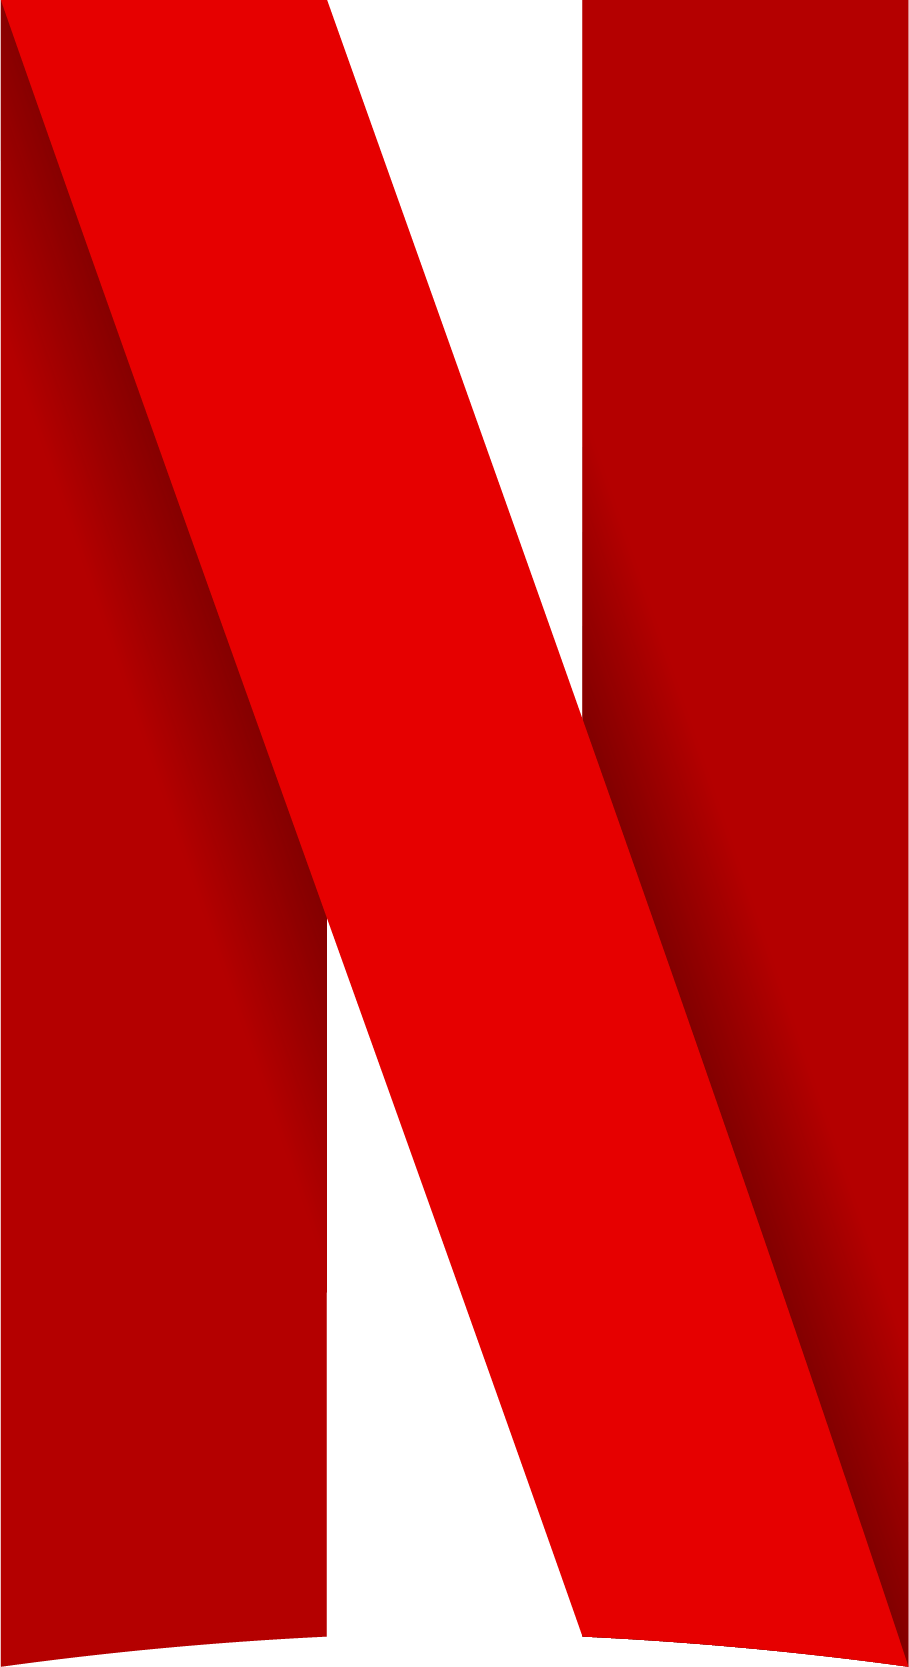 Nwtflix Logo - Netflix